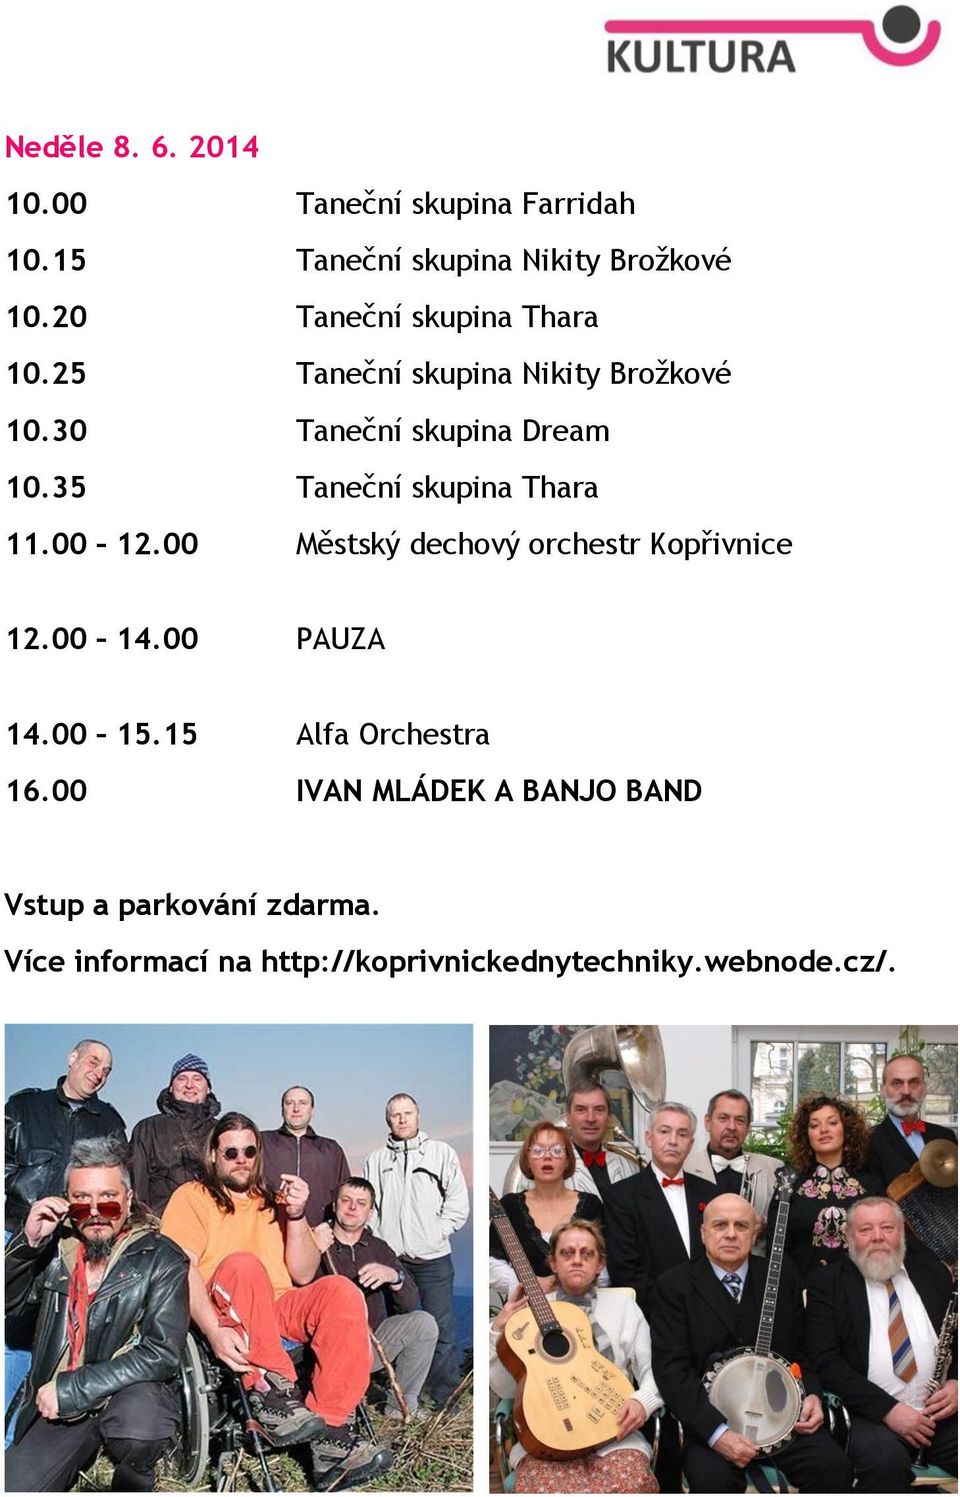 35 Taneční skupina Thara 11.00 12.00 Městský dechový orchestr Kopřivnice 12.00 14.00 PAUZA 14.00 15.